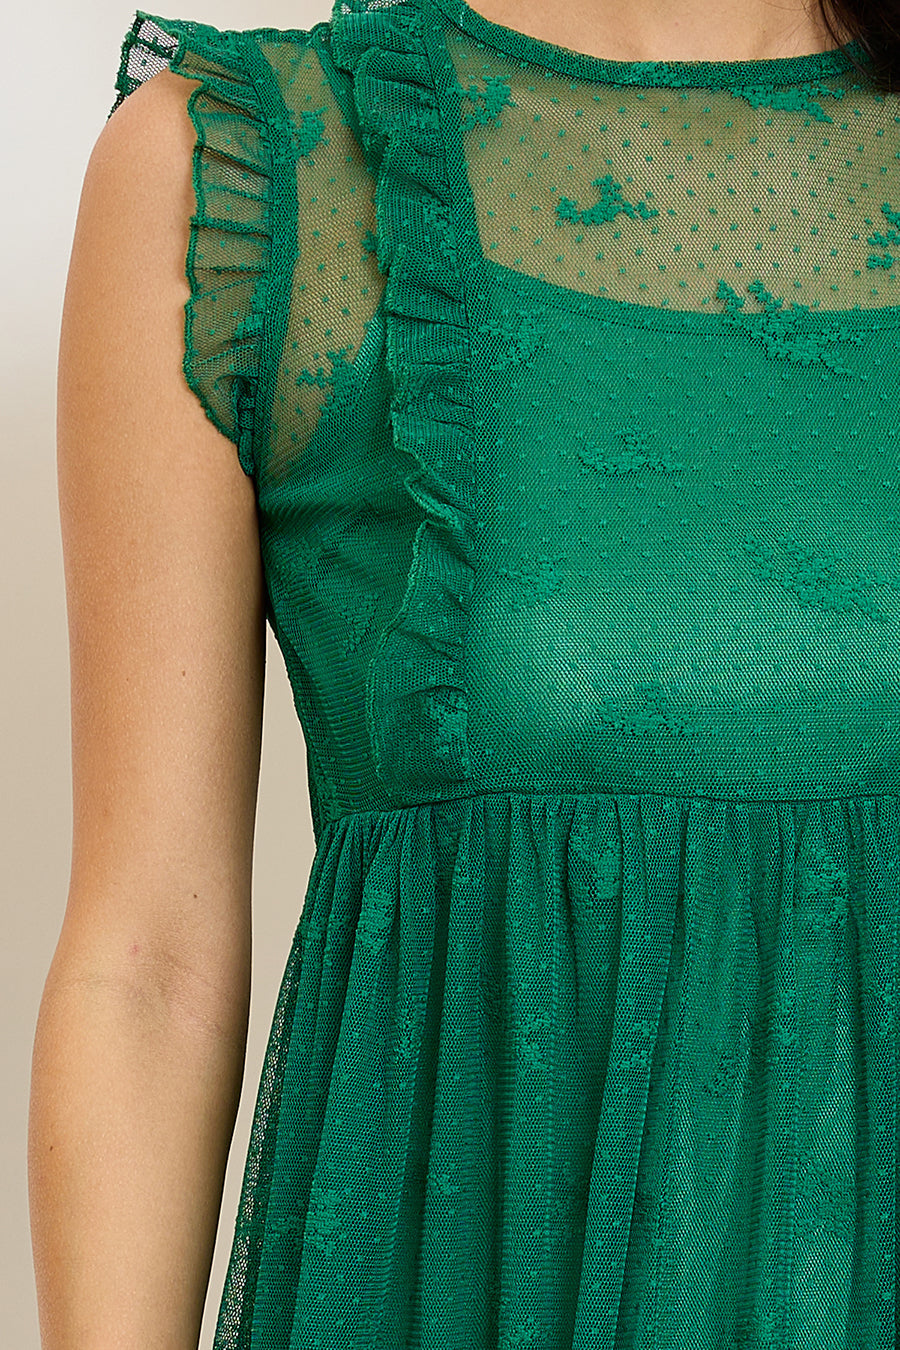 Γυναικείο φόρεμα Kamelia, Πράσινο 4